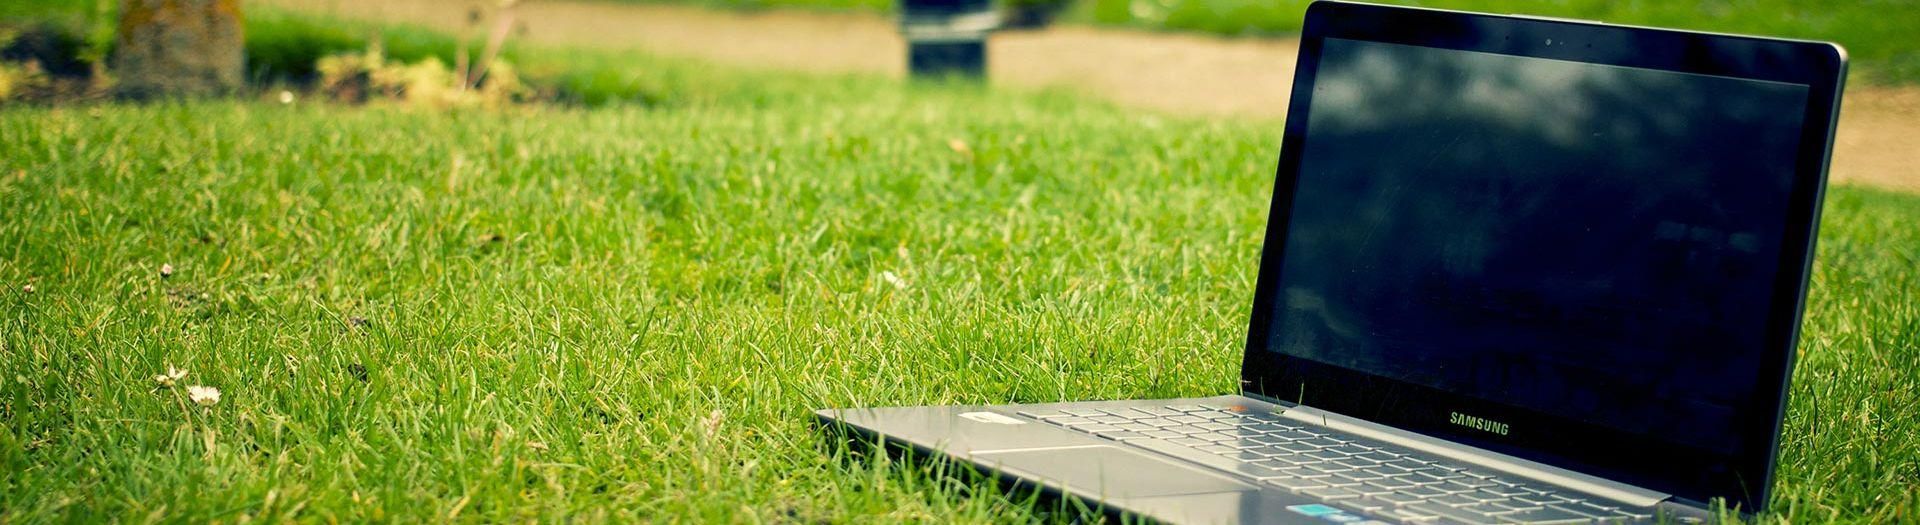 laptop-notebook-grass-meadow-9b558d75 Gesundheit